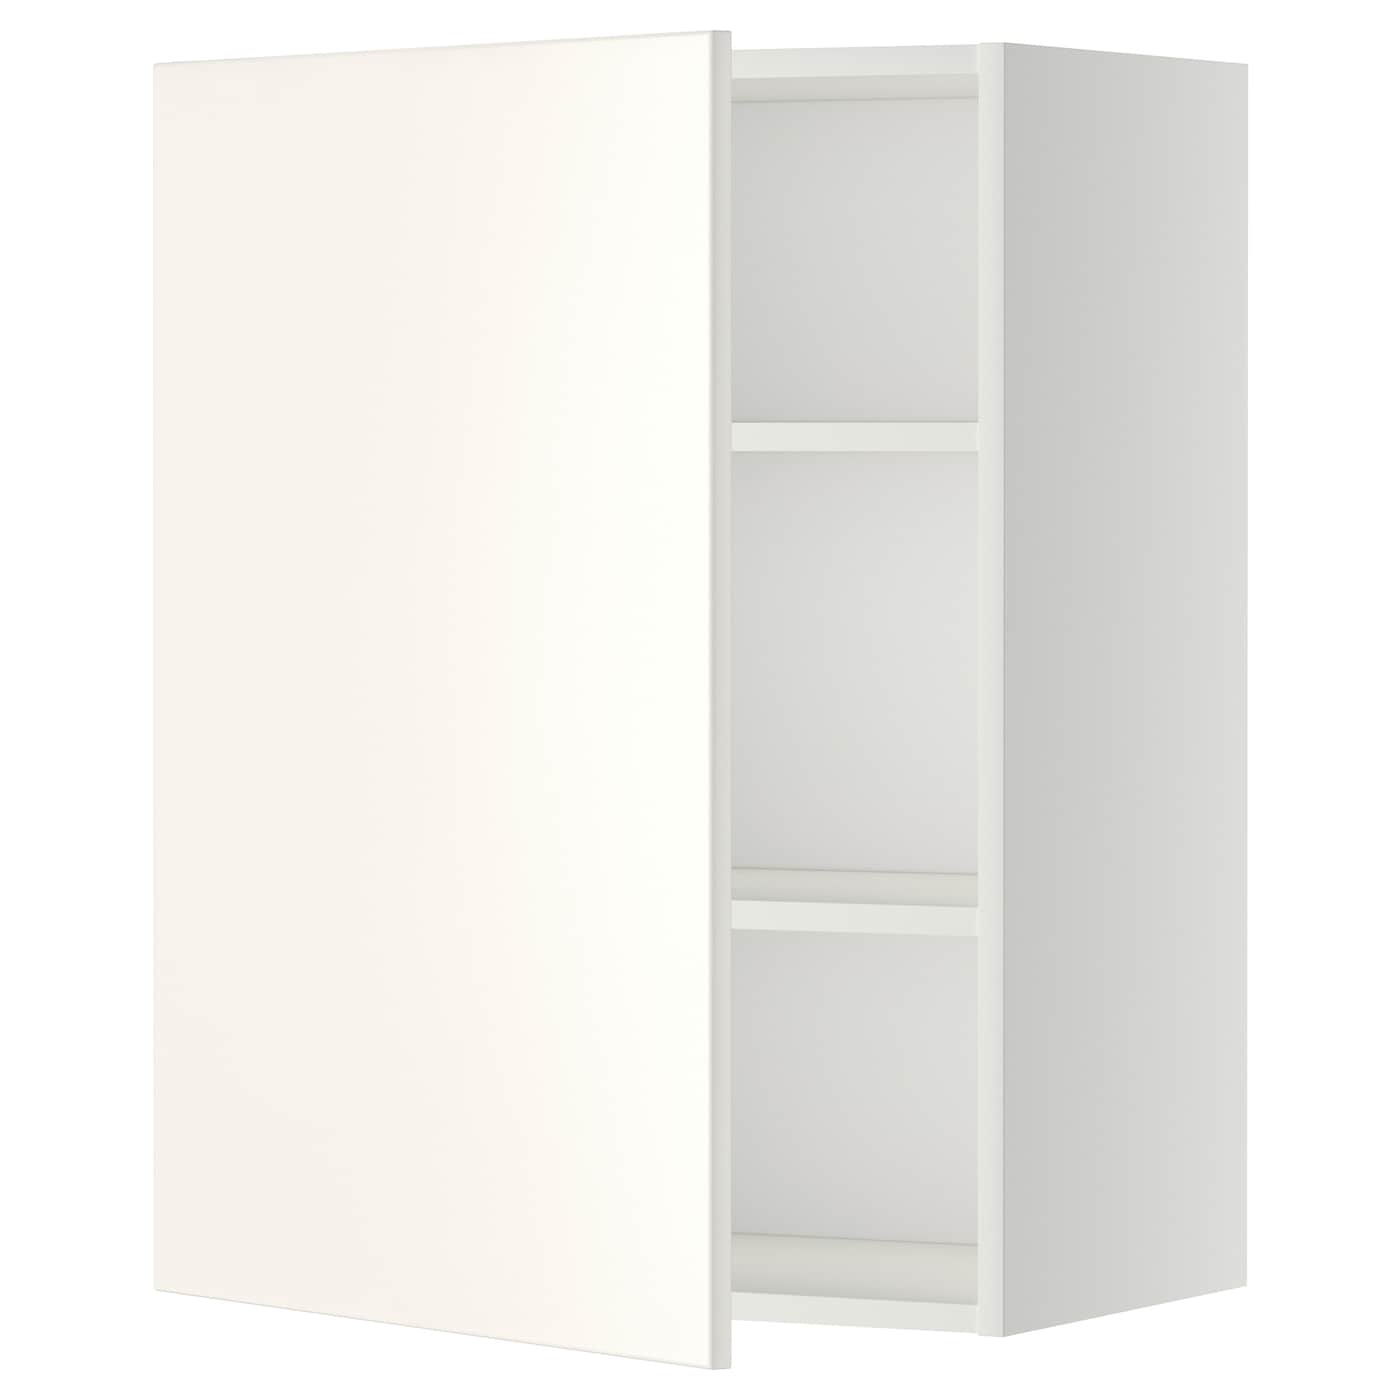 Навесной шкаф с полкой - METOD IKEA/ МЕТОД ИКЕА, 80х60 см, белый/светло-бежевый